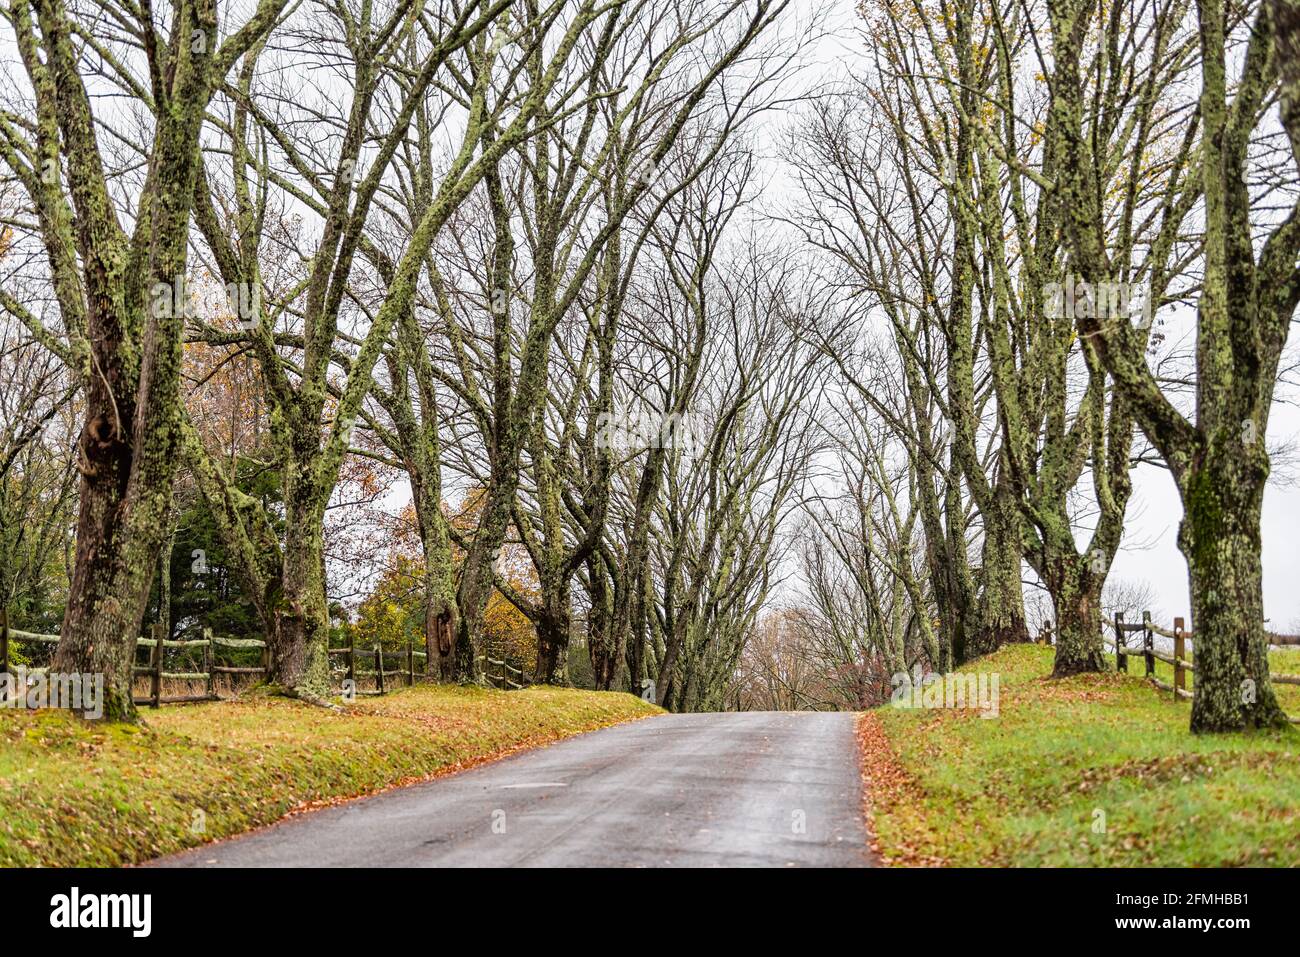 Campagne route rurale étroite menant à Ash Lawn-Highland, siège du président James Monroe dans le comté d'Albemarle, en Virginie, au printemps ou à l'automne Banque D'Images